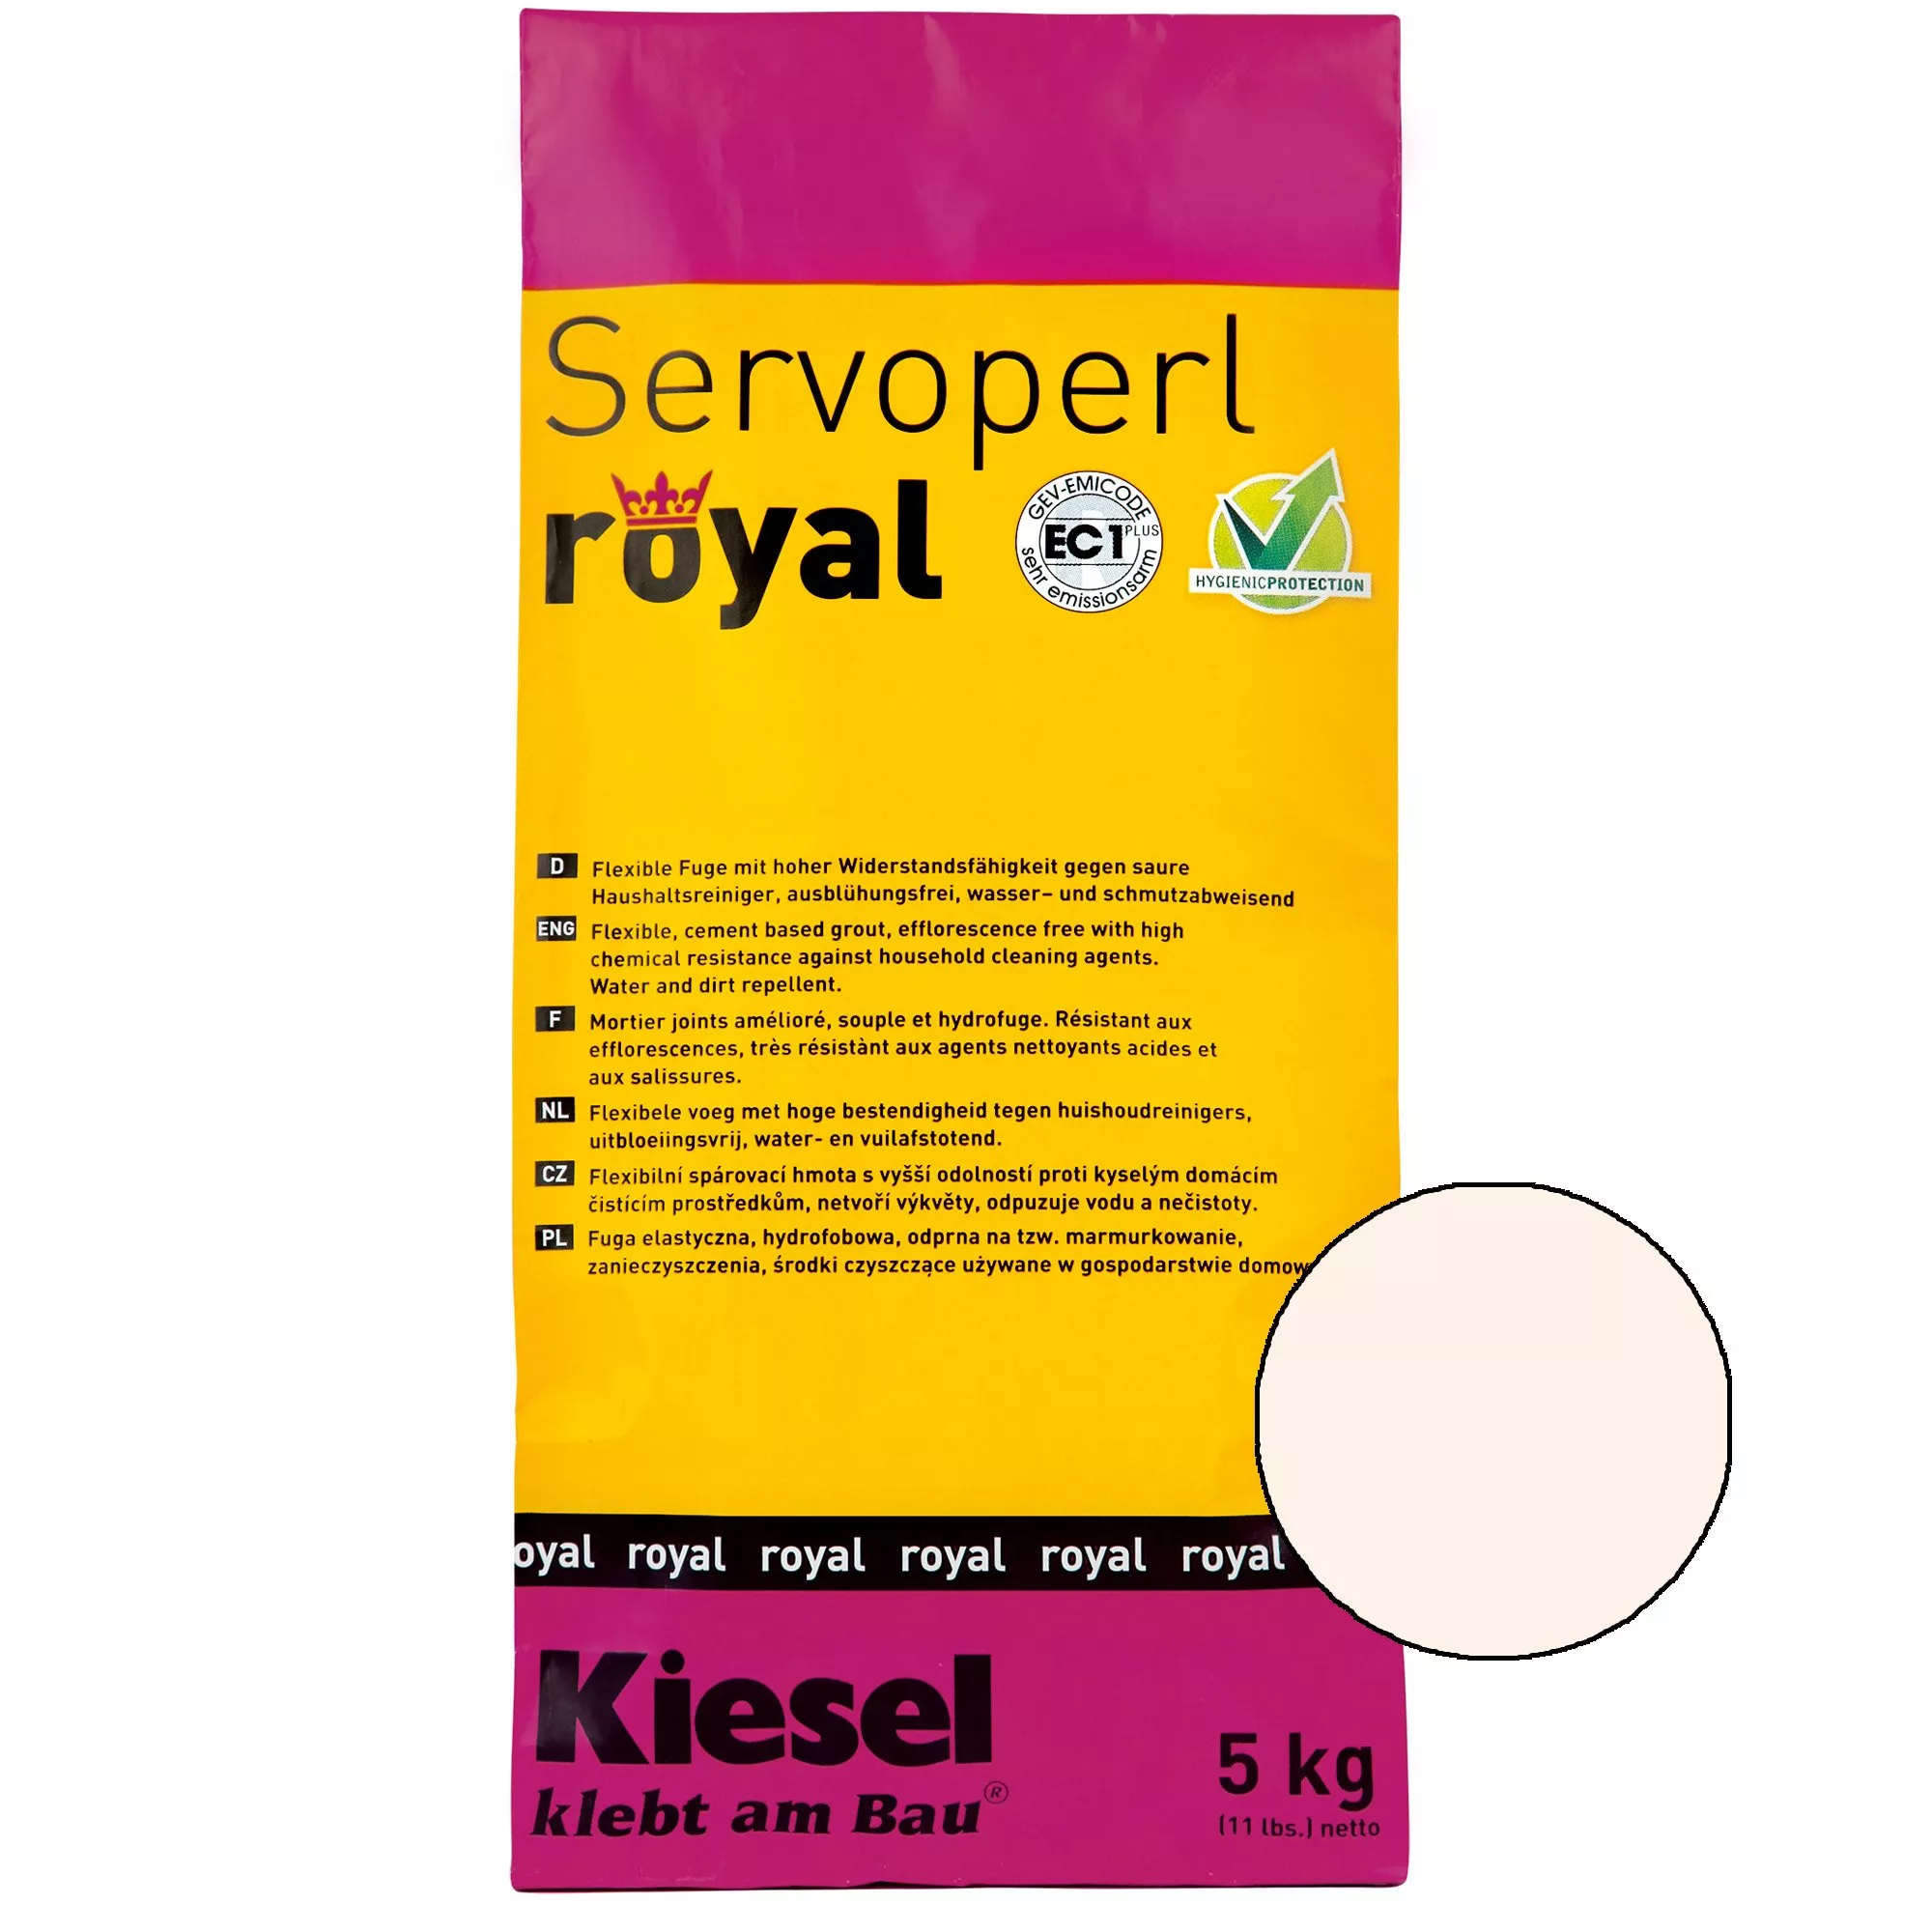 Kiesel Servoperl royal - fuga keverék - 5 kg Pergamon